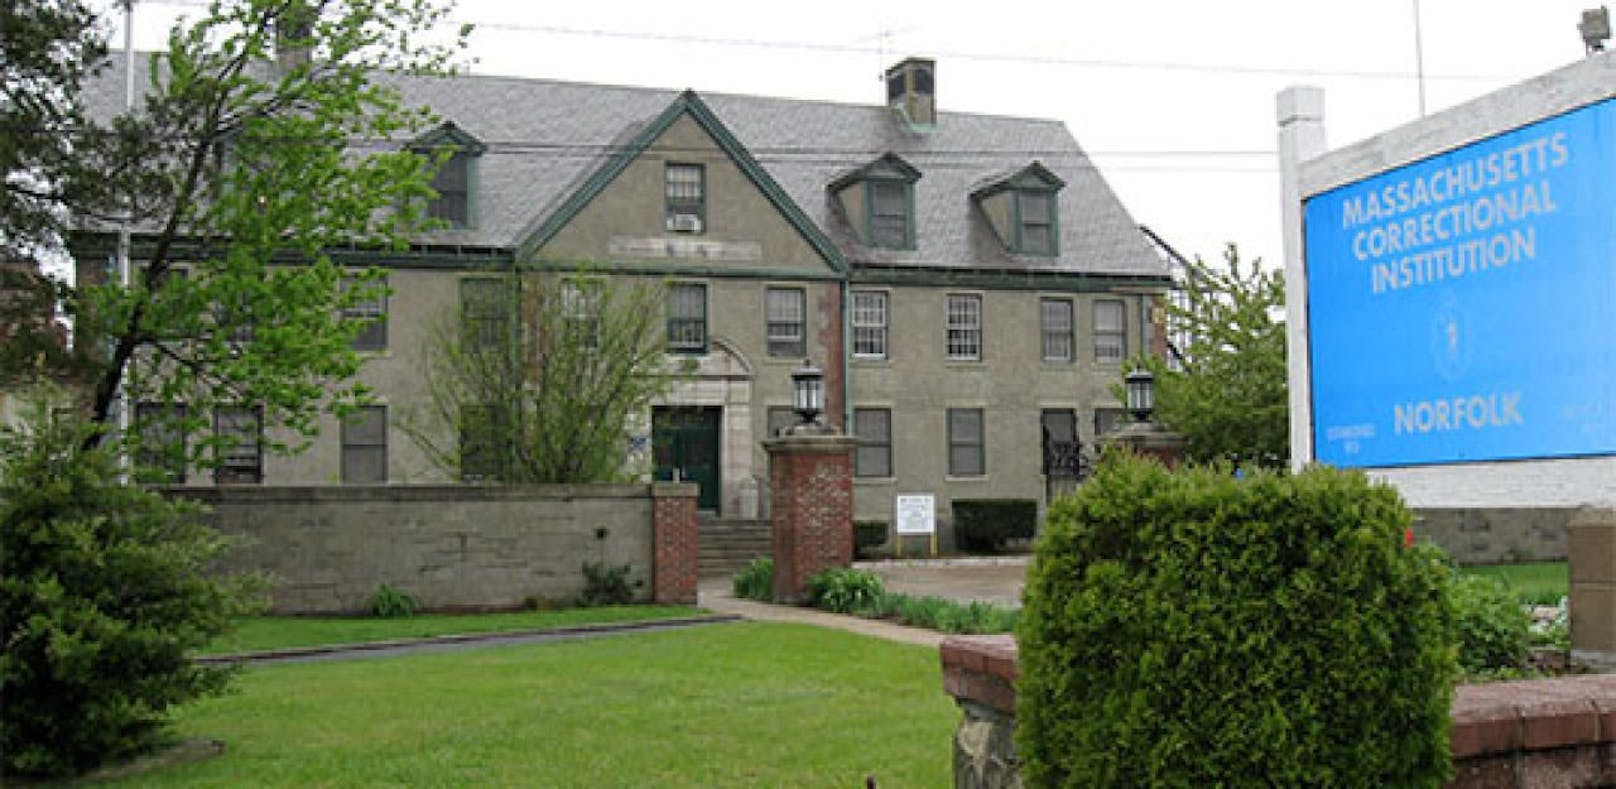 Im Massachusetts Correctional Institution in Norfolk sind rund 1.500 Häftlinge untergebracht.